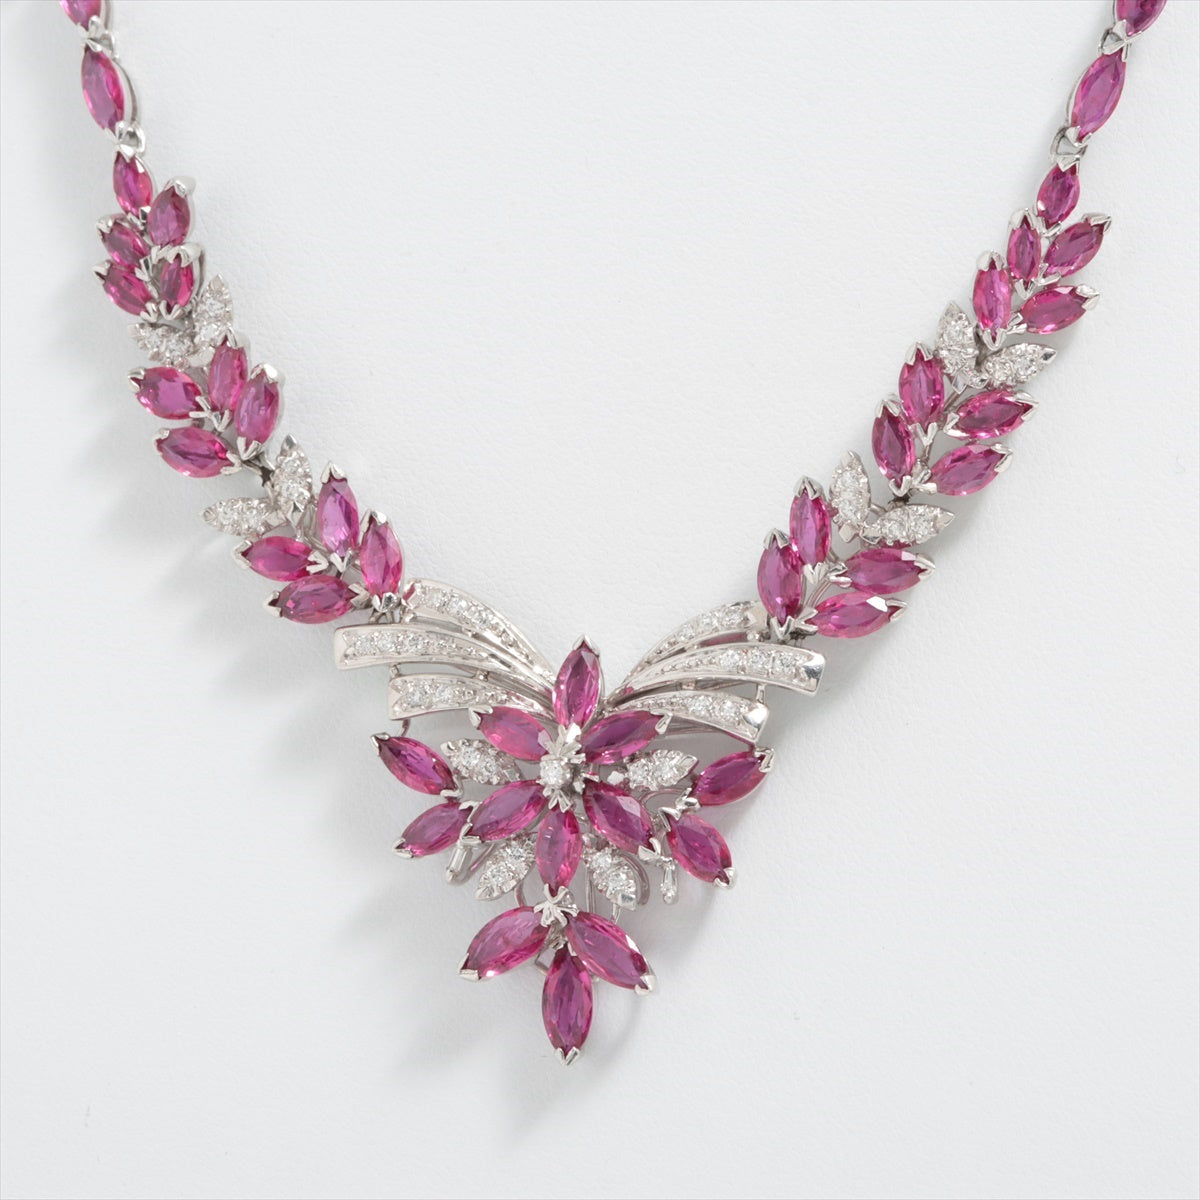 Ru diamond necklace Pt900Pt850 45.5g 19.32 0.50 1 stone only